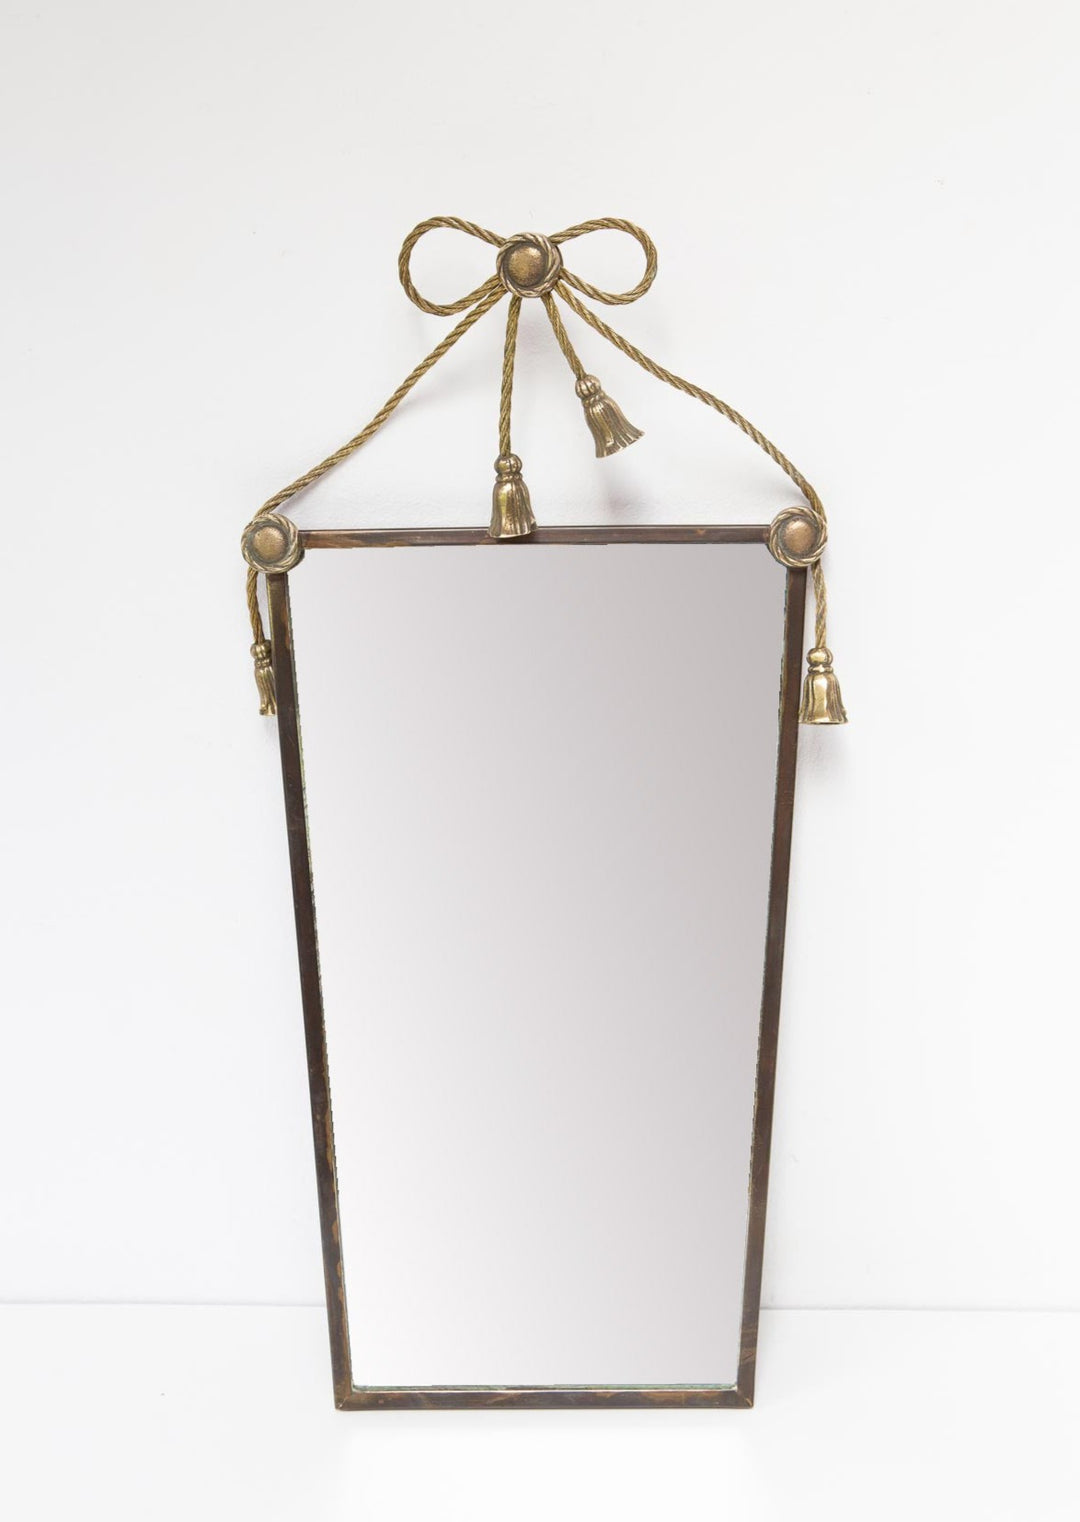 Antiguo espejo francés latón con lazo años 40/50 antique french mirror